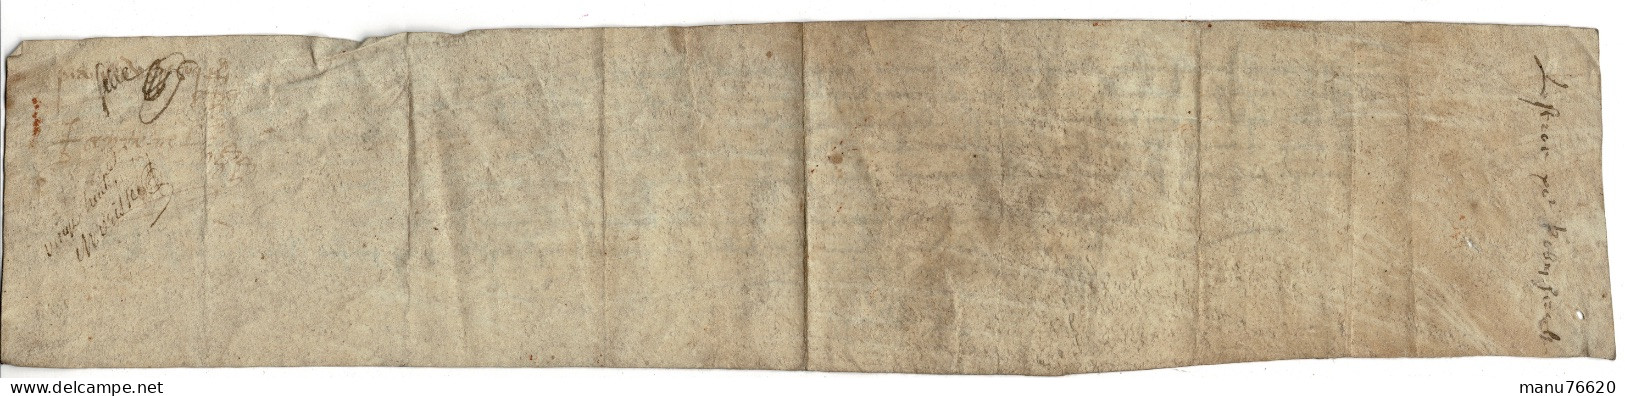 Ref 2 - RARE!, Lettre, Document Notarial , Le Havre Et Environs , écritures Très Anciennes , Papier épais. - Manuscripten